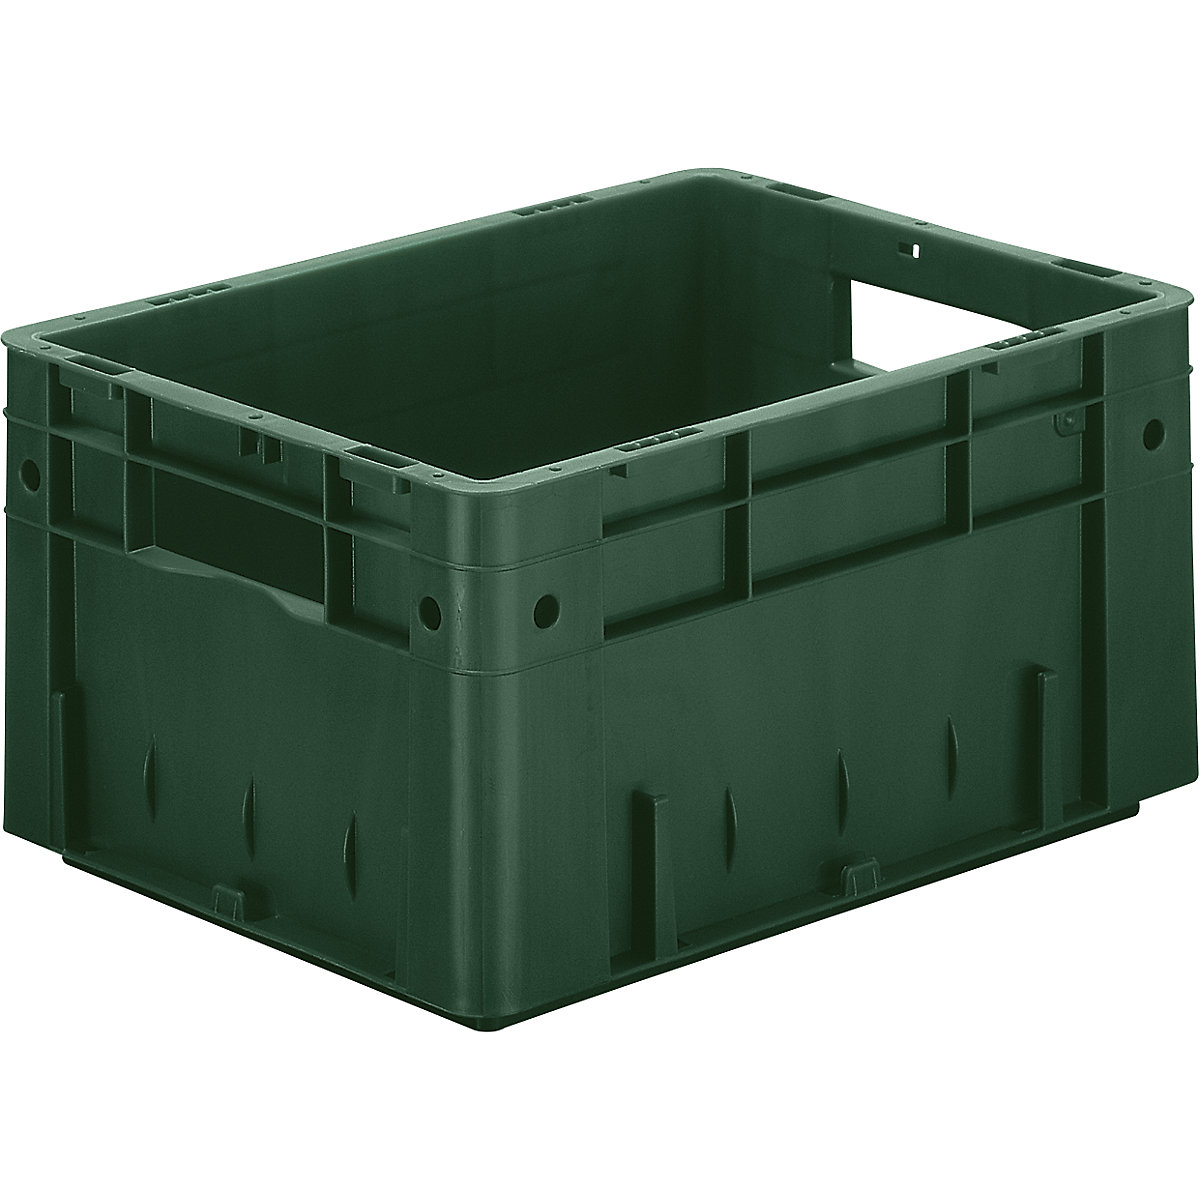 Schwerlast-Euro-Behälter, Polypropylen, Volumen 17,5 l, LxBxH 400 x 300 x 210 mm, Wände geschlossen, Boden geschlossen, grün, VE 4 Stk-4